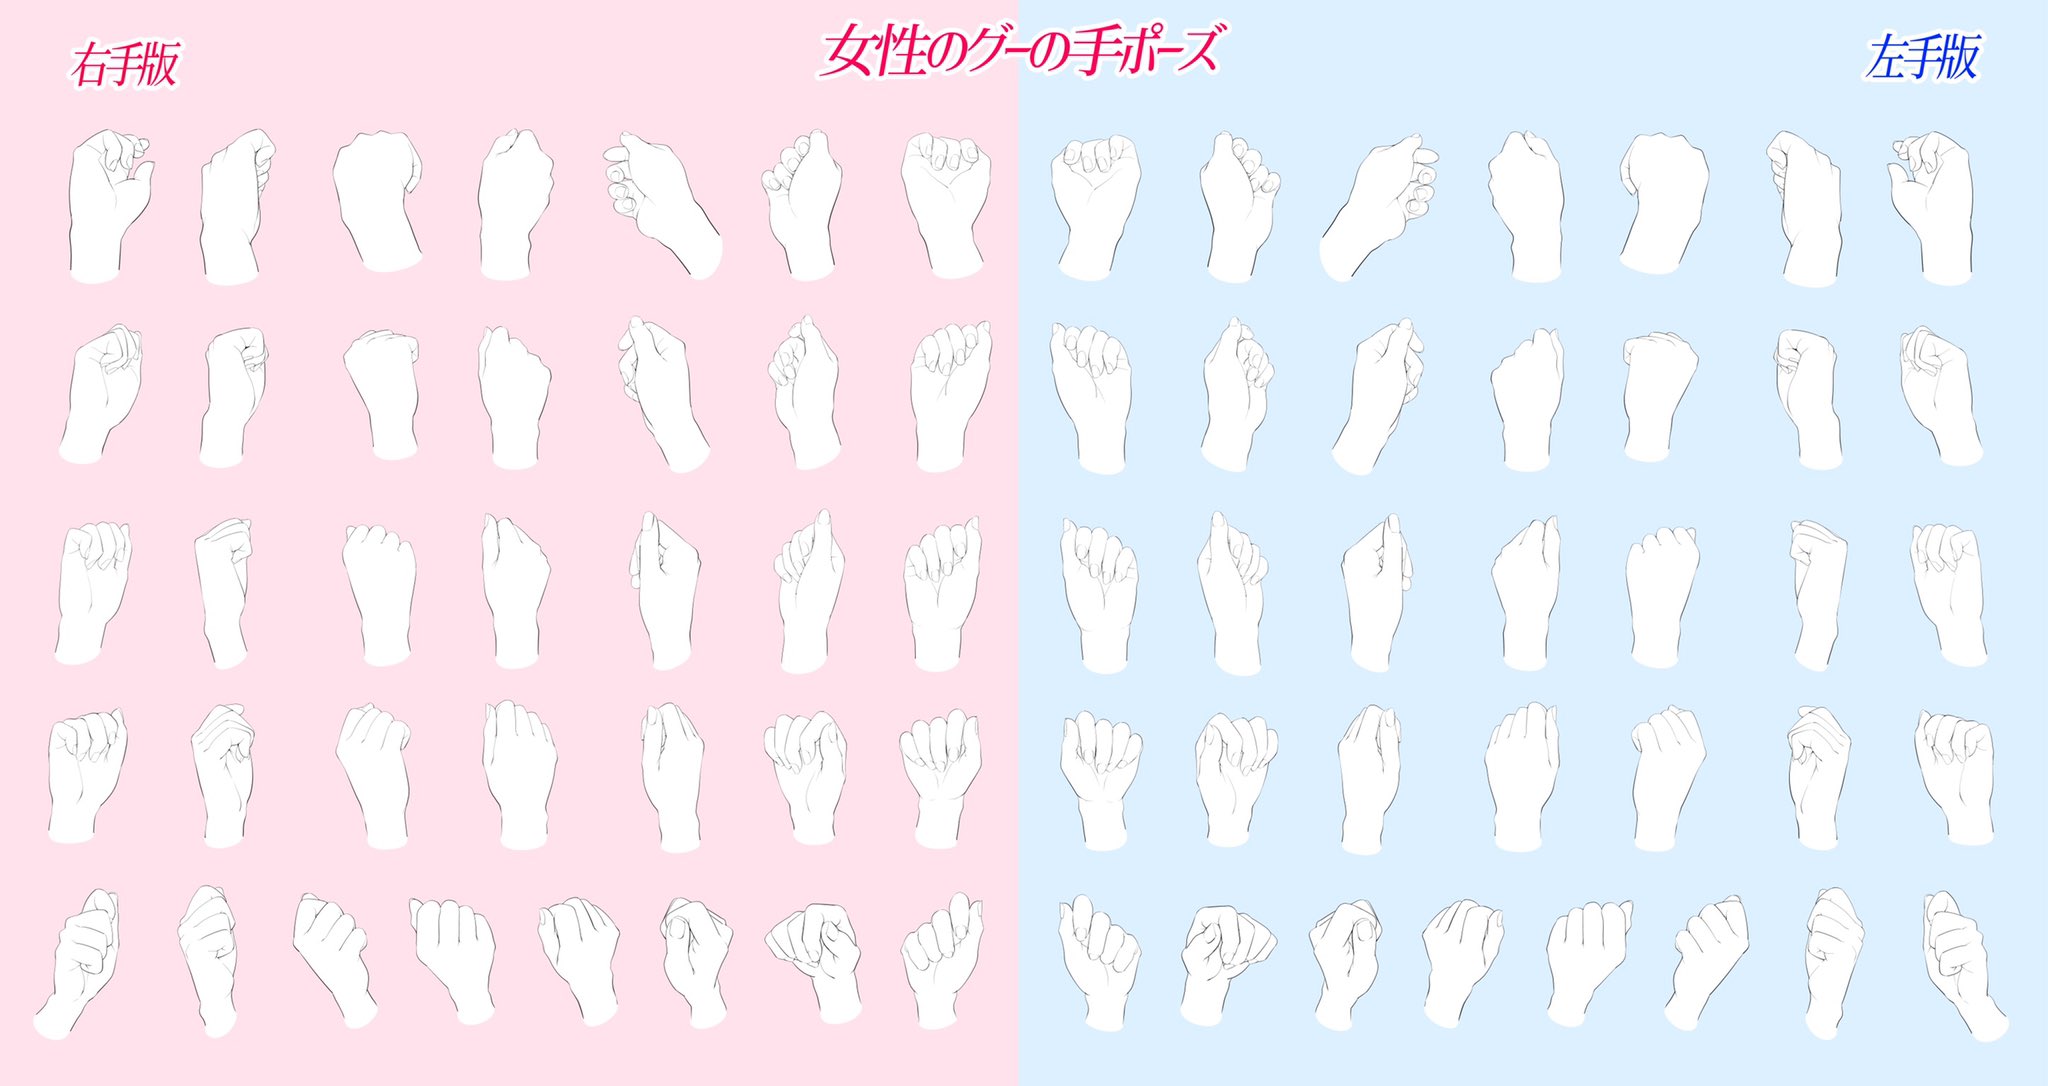 吉村拓也 イラスト講座 手のアングル素材 とは 男性 Amp 女性の 色んなポーズの手と色んな角度 を描いた素材 全452構図 です データは合計5ページ パー 型 グー 型 手話ポーズ型 すべて合わせて452構図の素材です